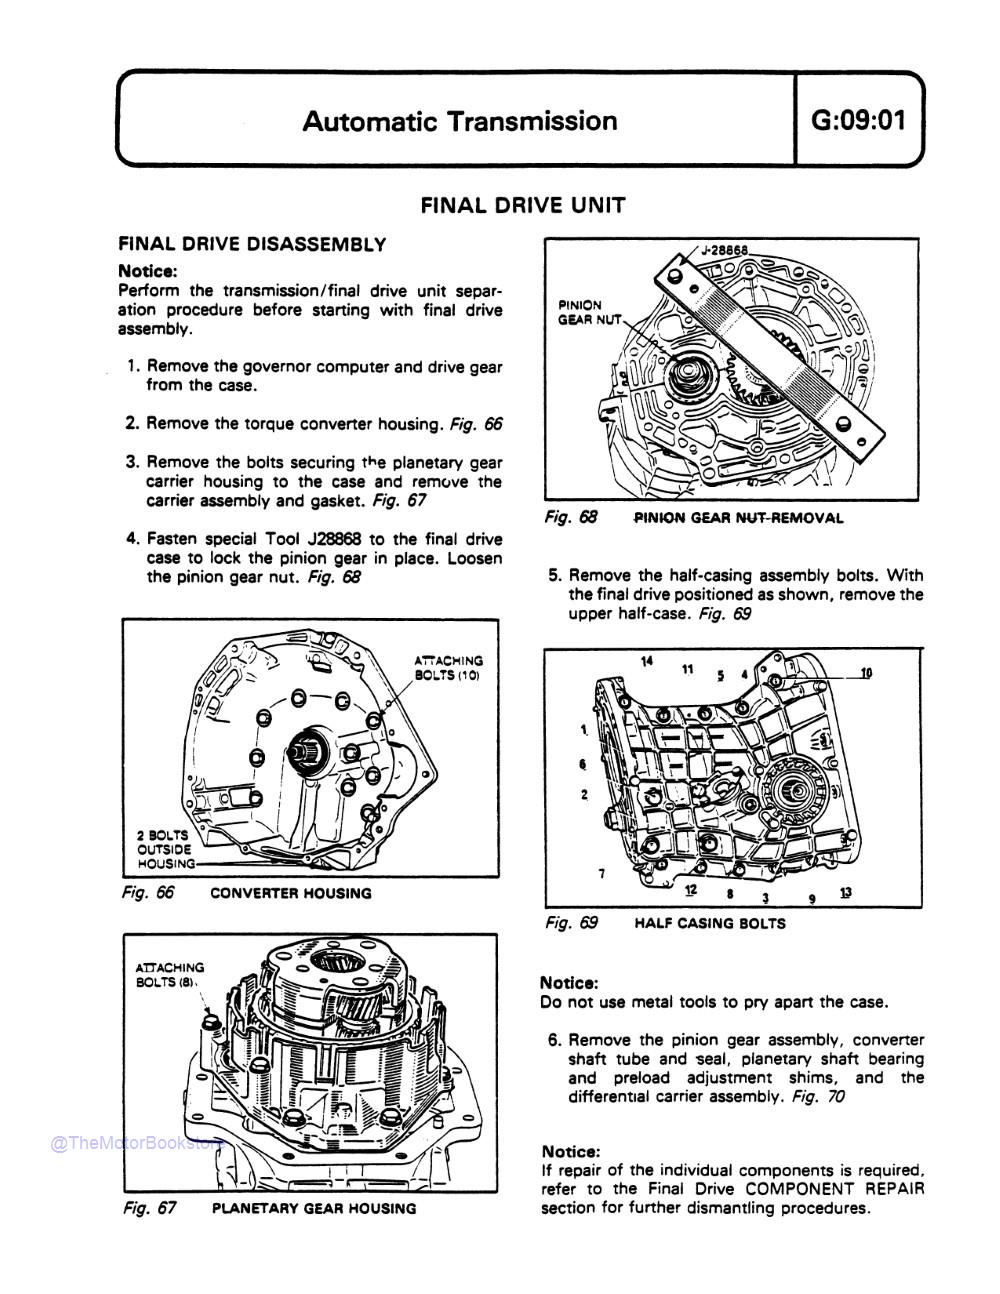 1981-1983 DeLorean Technical Service Manual - Sample Page 1